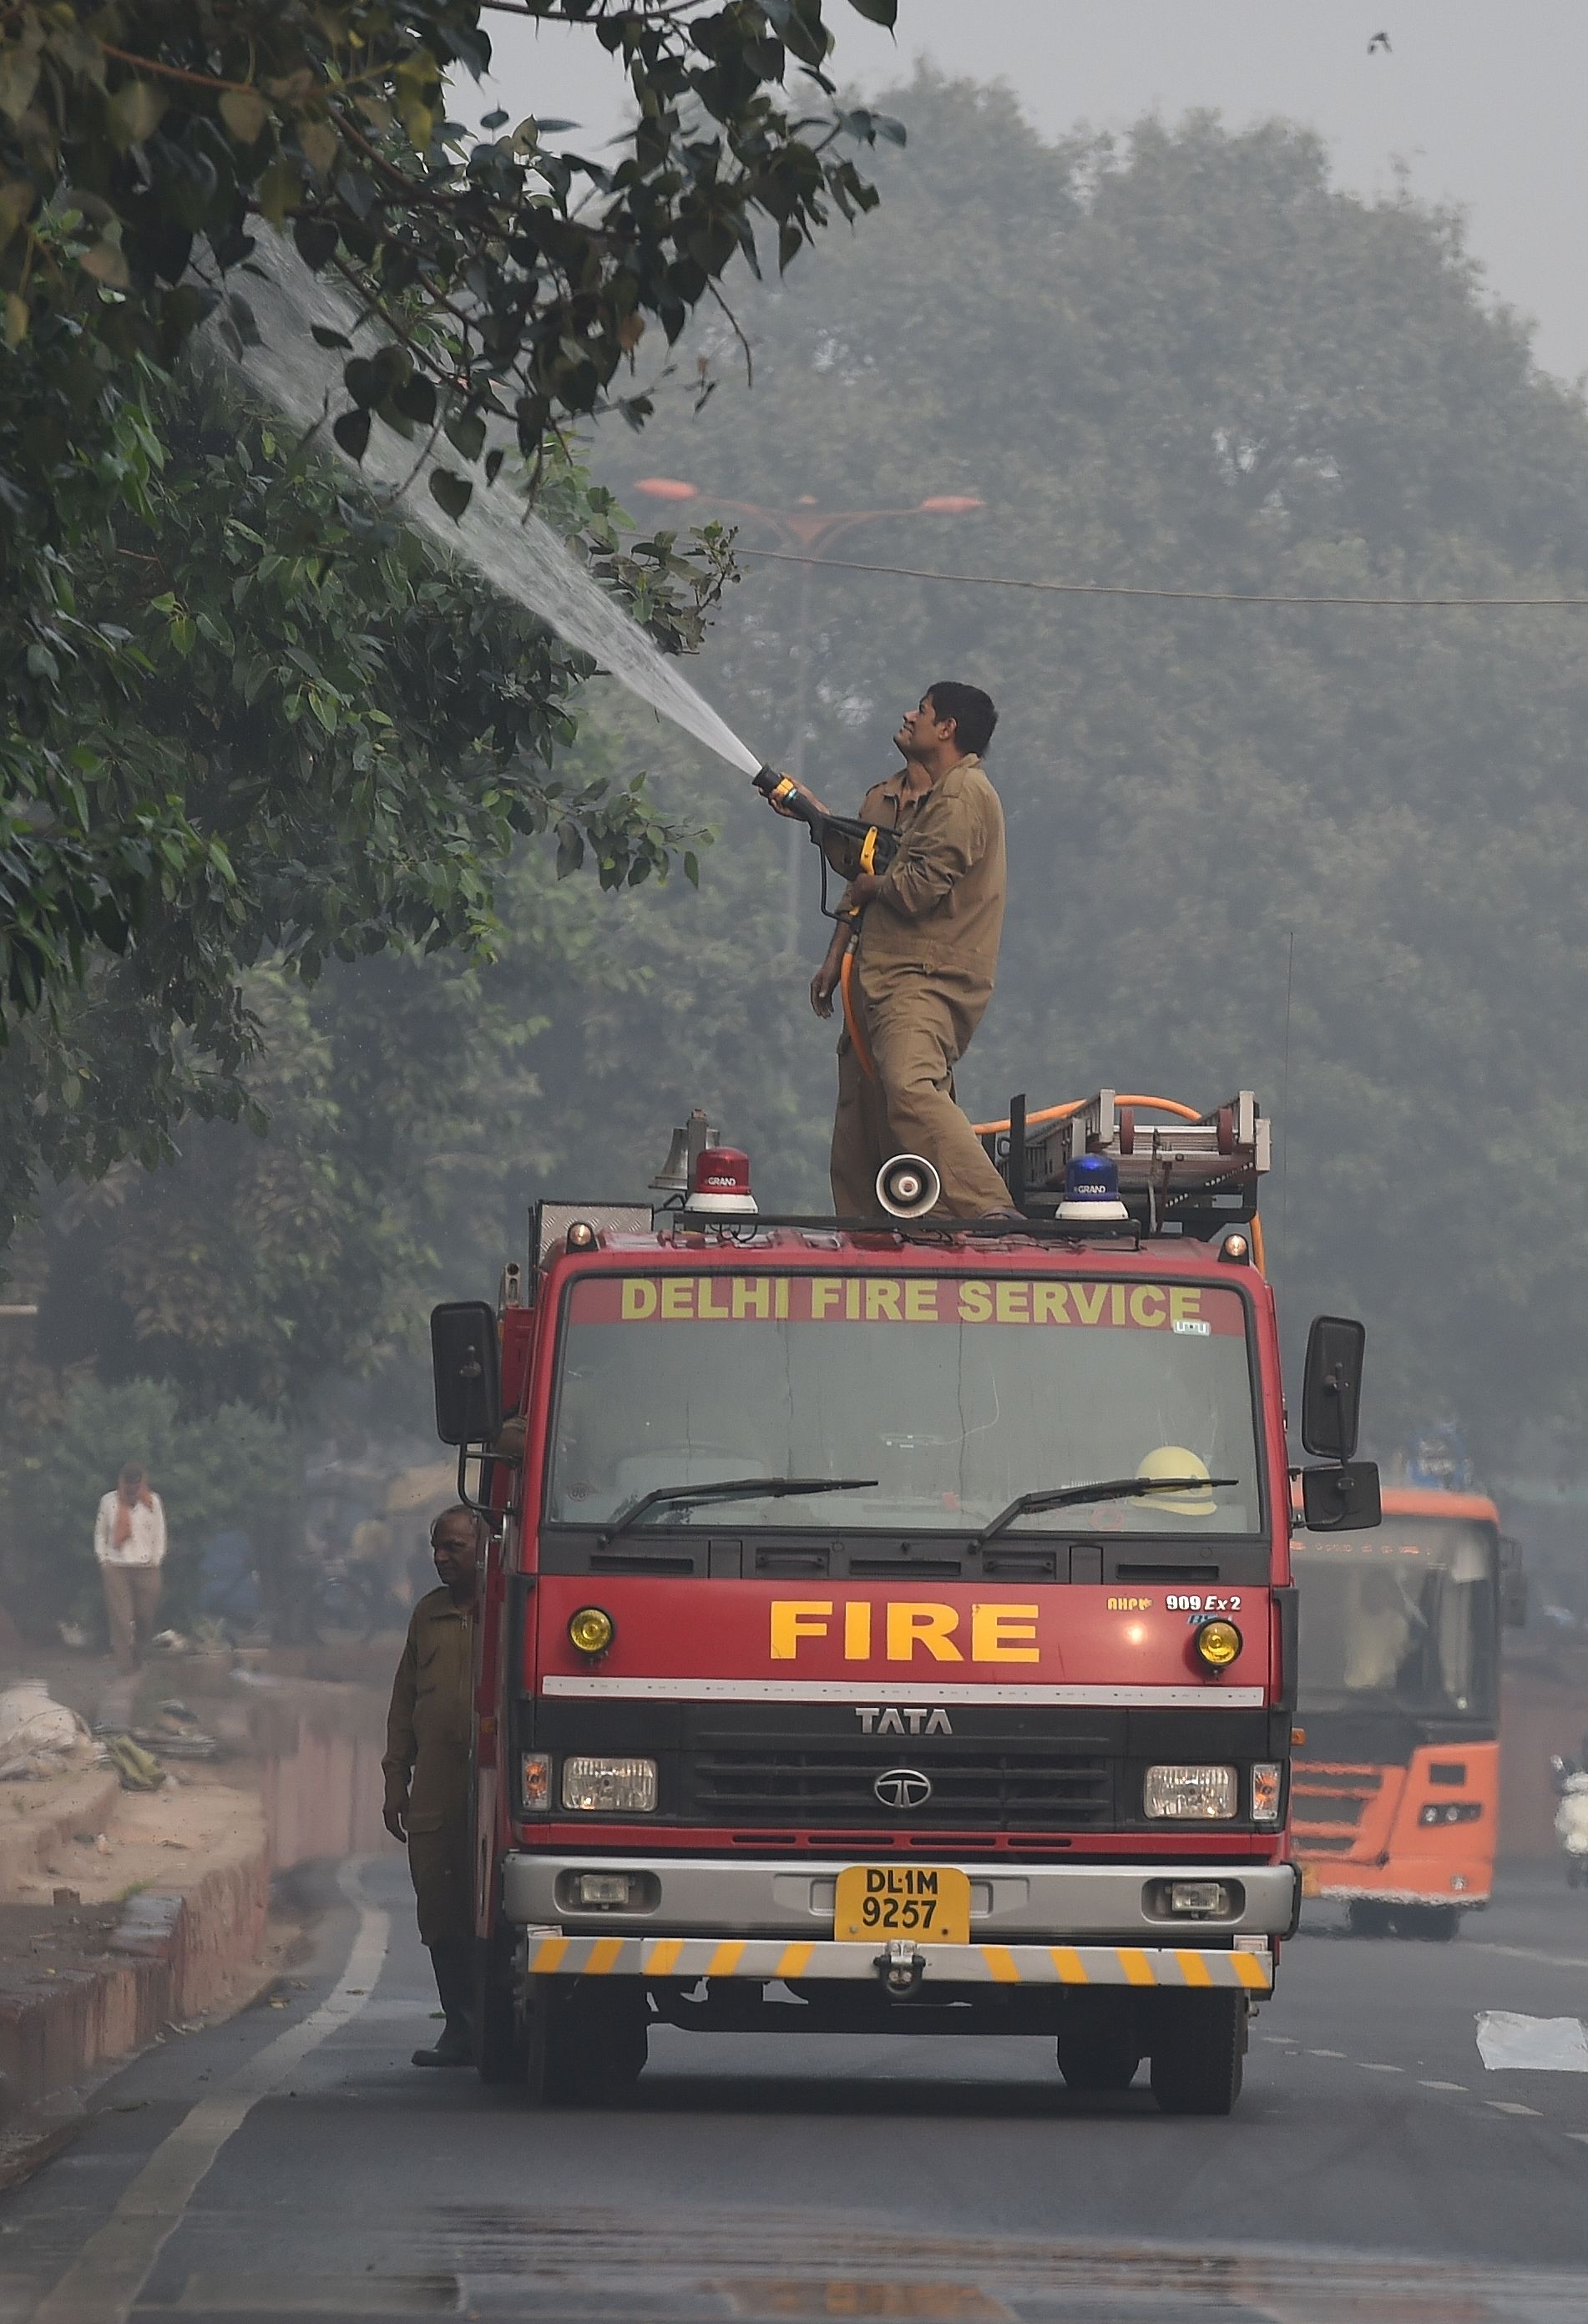 قوات الدفاع المدنى الهندية تقوم بتنظيف الأشجار